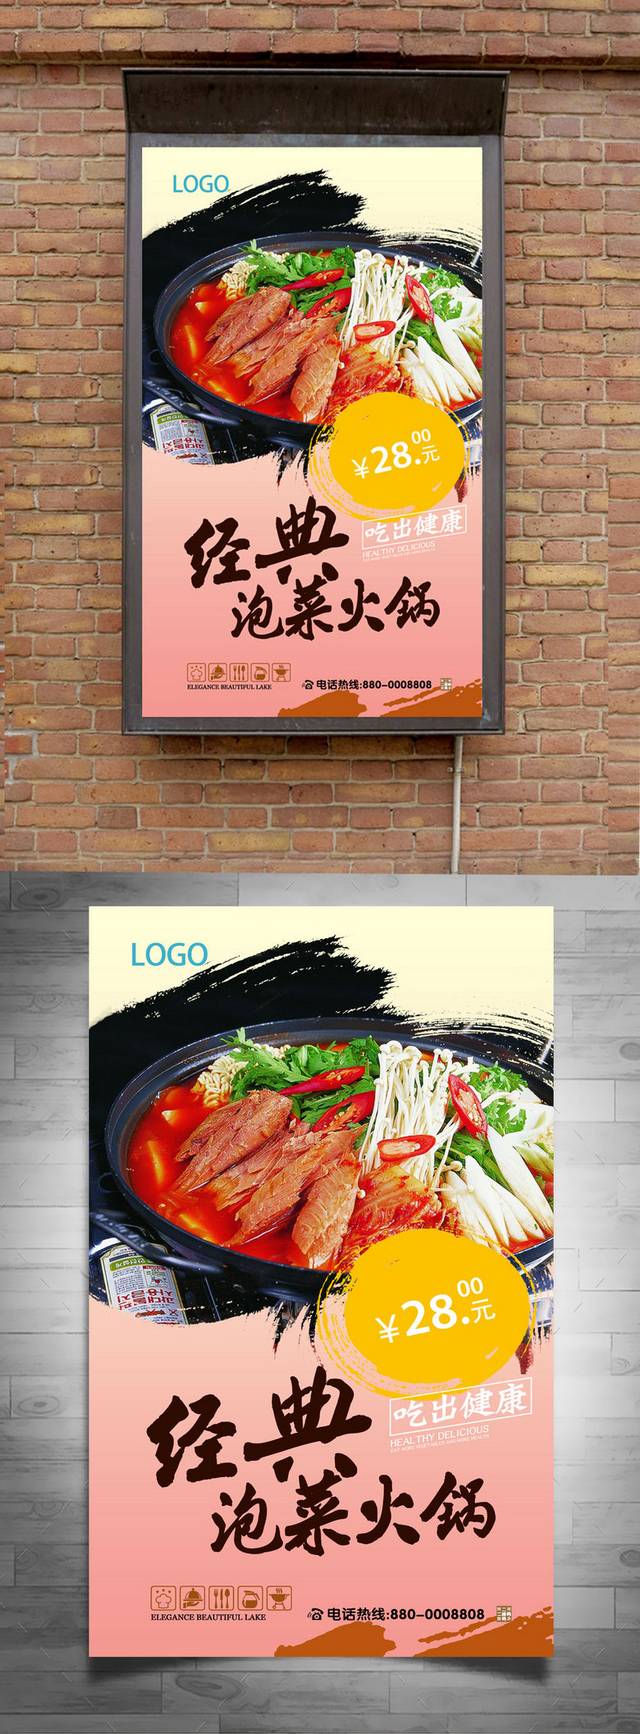 高档泡菜火锅宣传海报设计